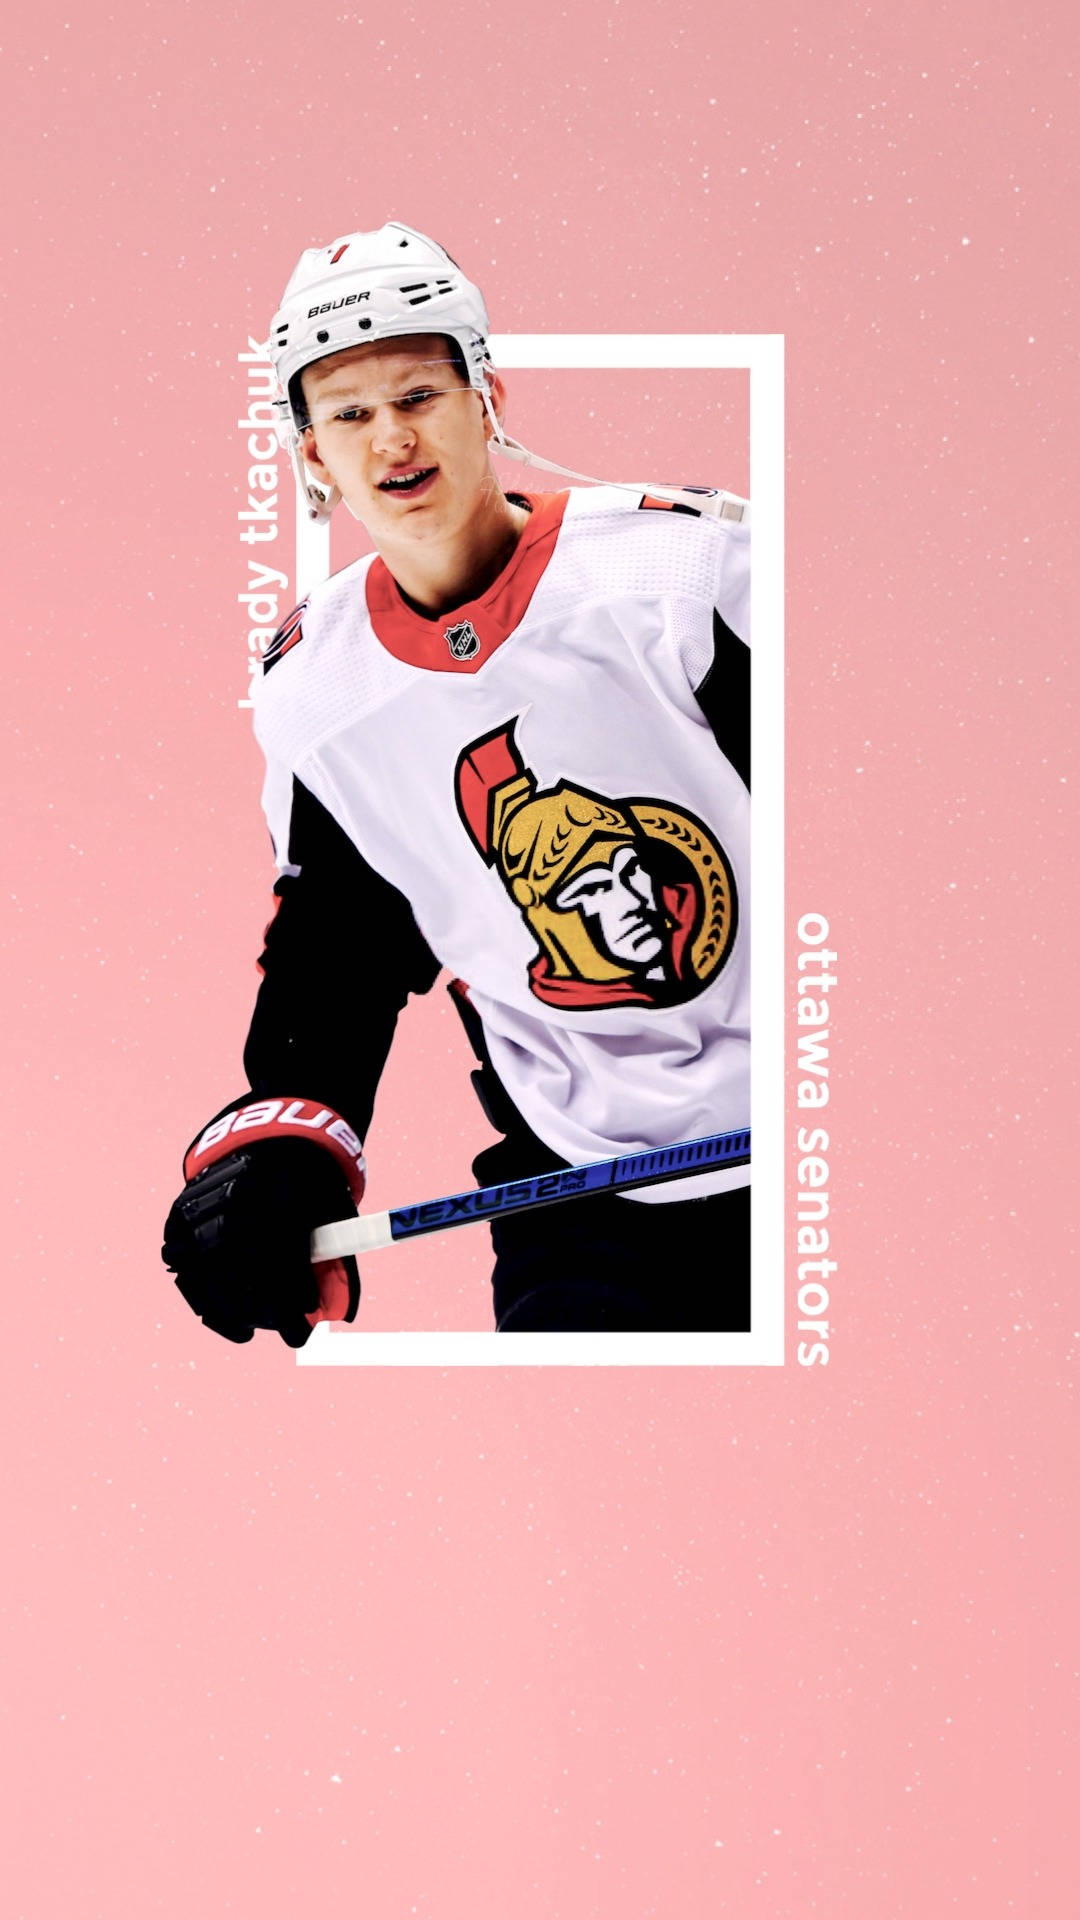 Ottawa Senators Star Player, Brady Tkachuk, in Vivid Pink Fanart. Wallpaper